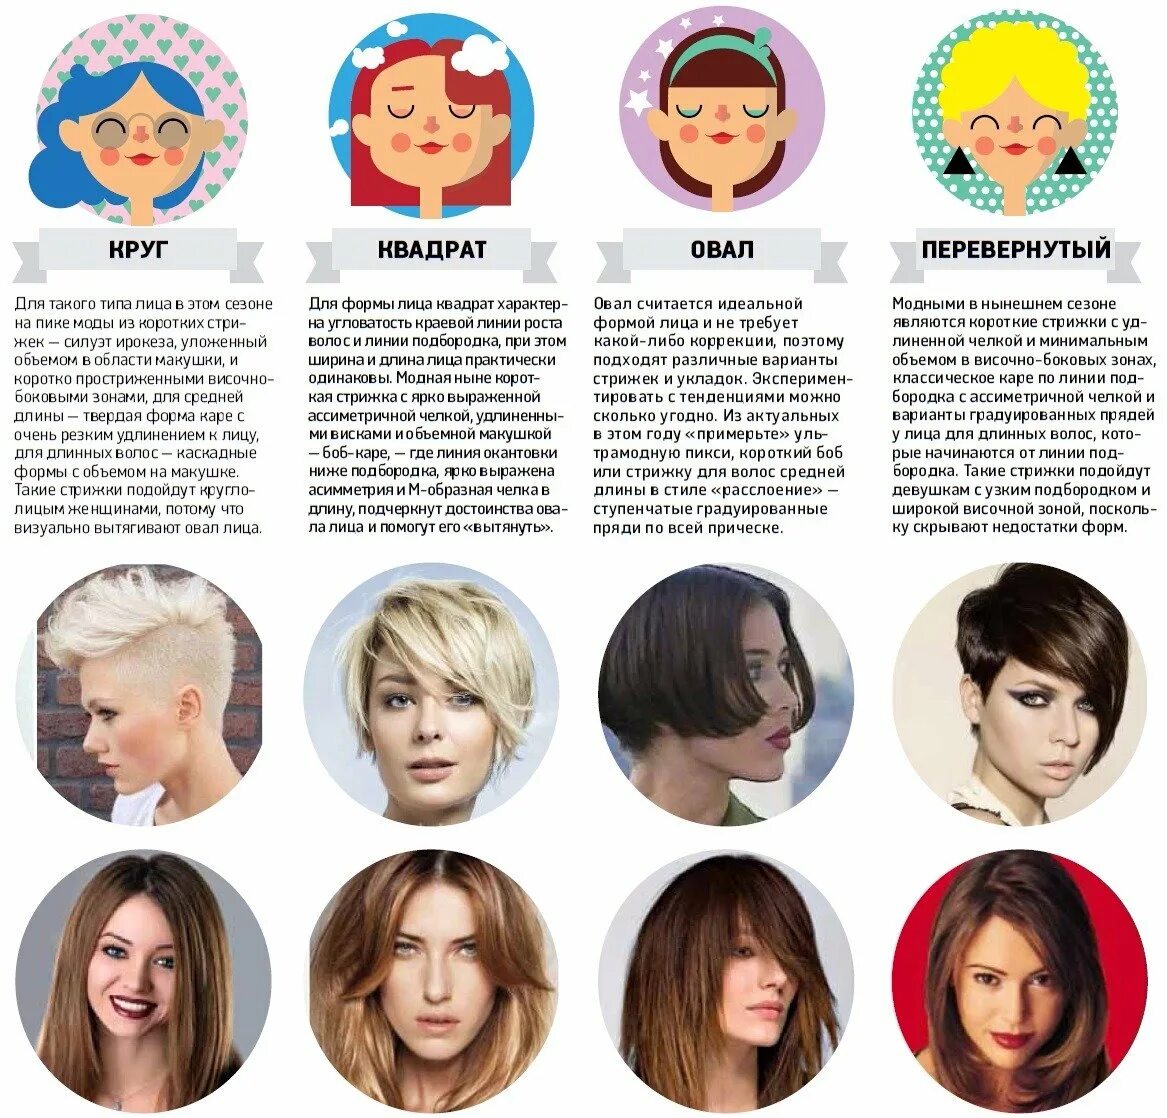 Стрижки по типу лица. Стрижки для разных форм лица. Причёски по типу лица женские. Типы причесок по форме лица.